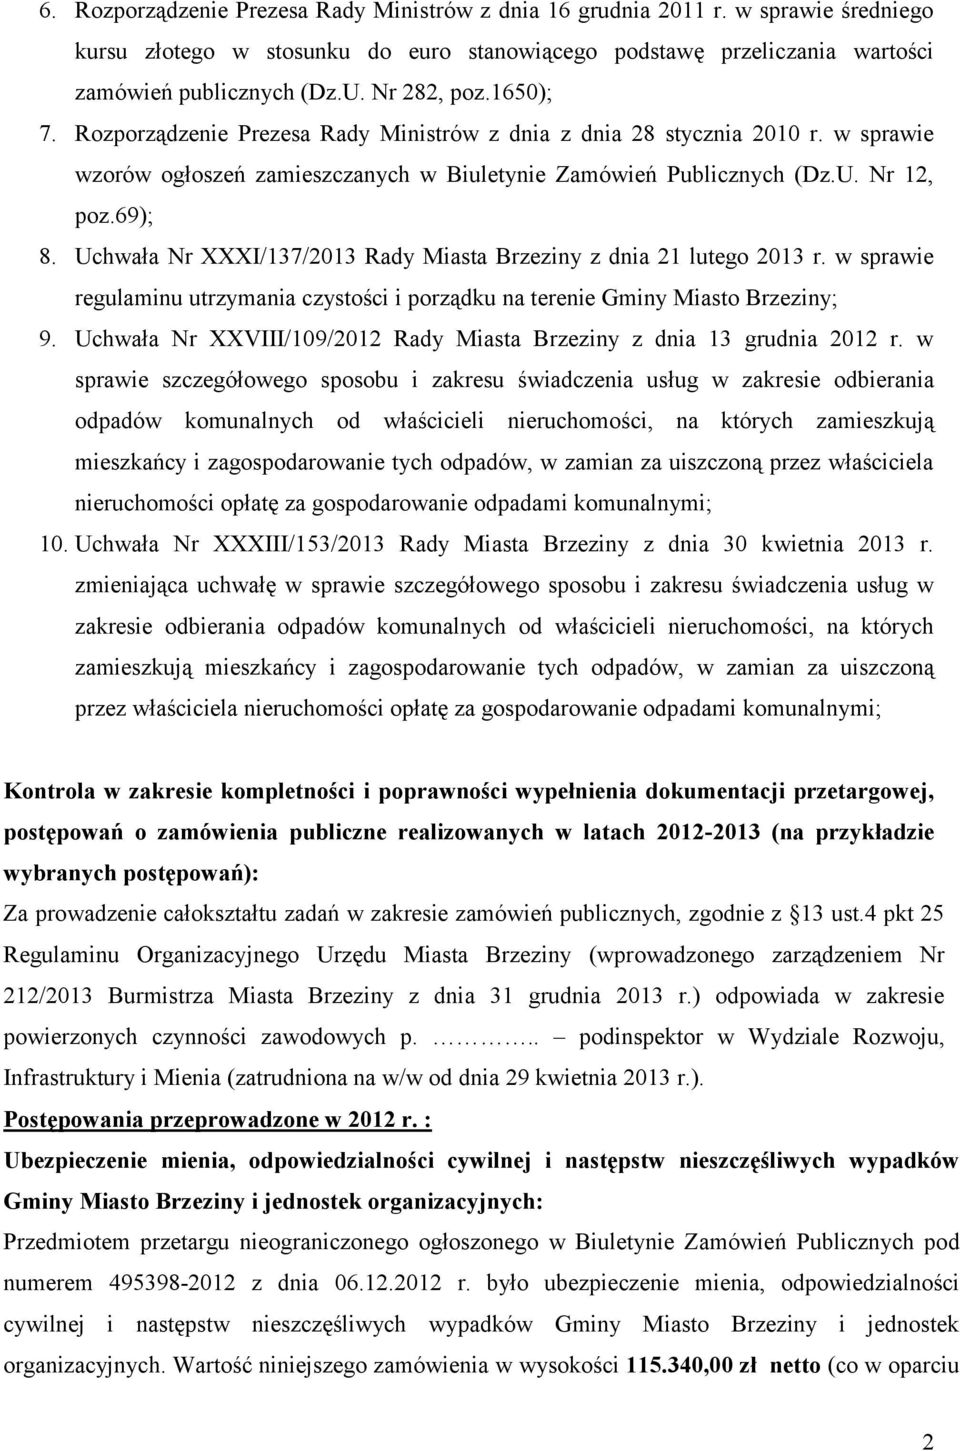 Uchwała Nr XXXI/137/2013 Rady Miasta Brzeziny z dnia 21 lutego 2013 r. w sprawie regulaminu utrzymania czystości i porządku na terenie Gminy Miasto Brzeziny; 9.